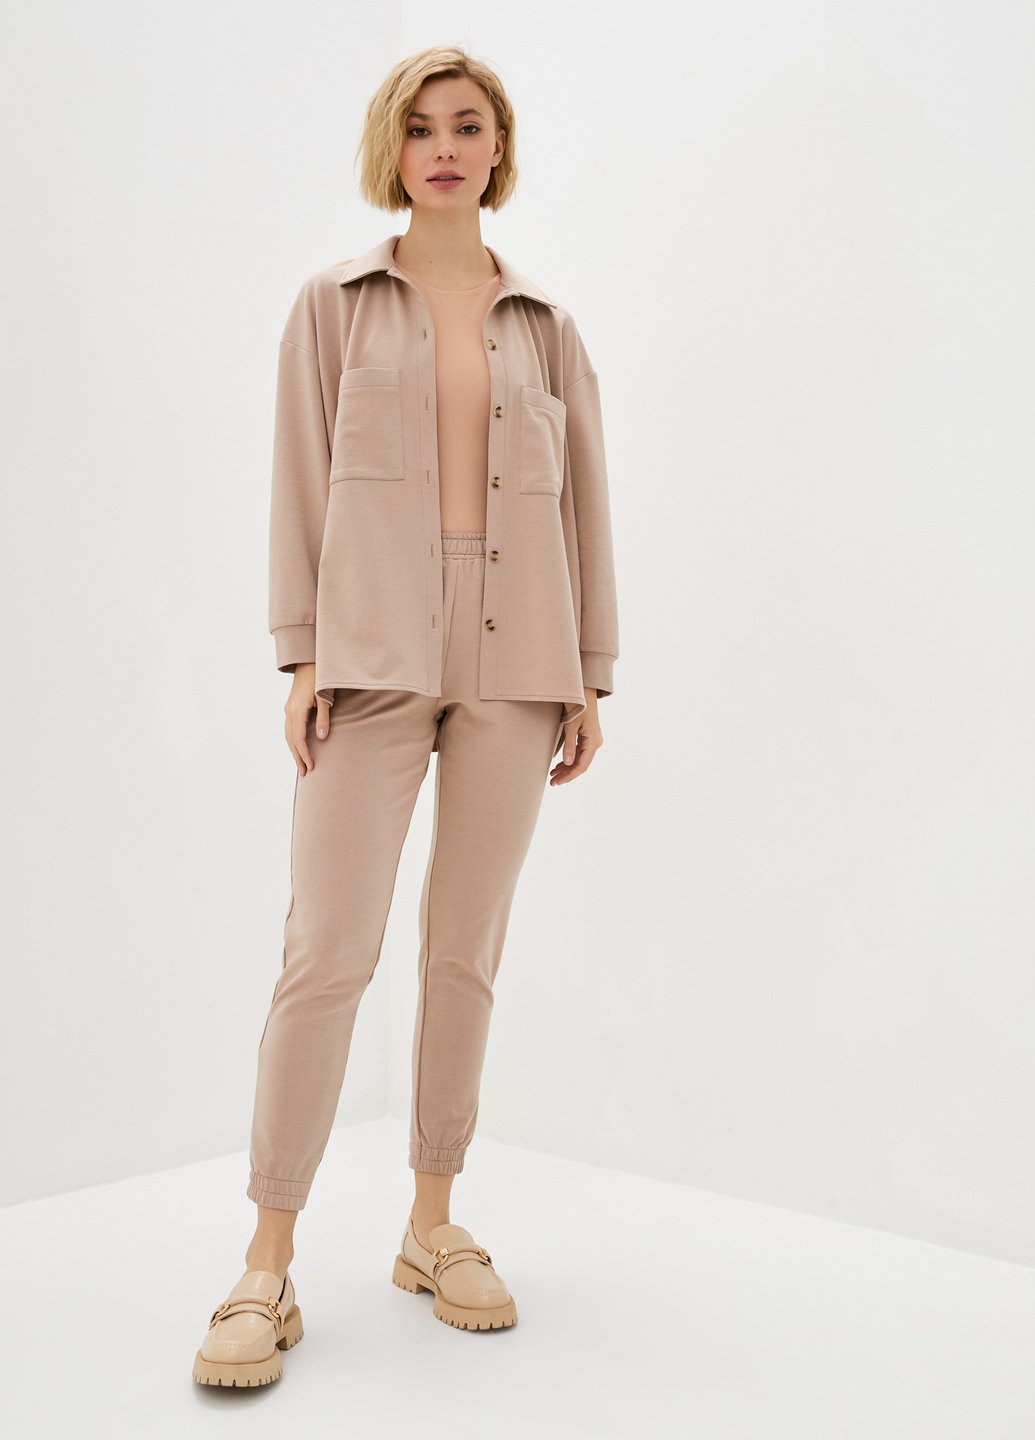 Купить Костюм женский с рубашкой бежевого цвета Merlini Сандерленд 100000087, размер 42-44 в интернет-магазине